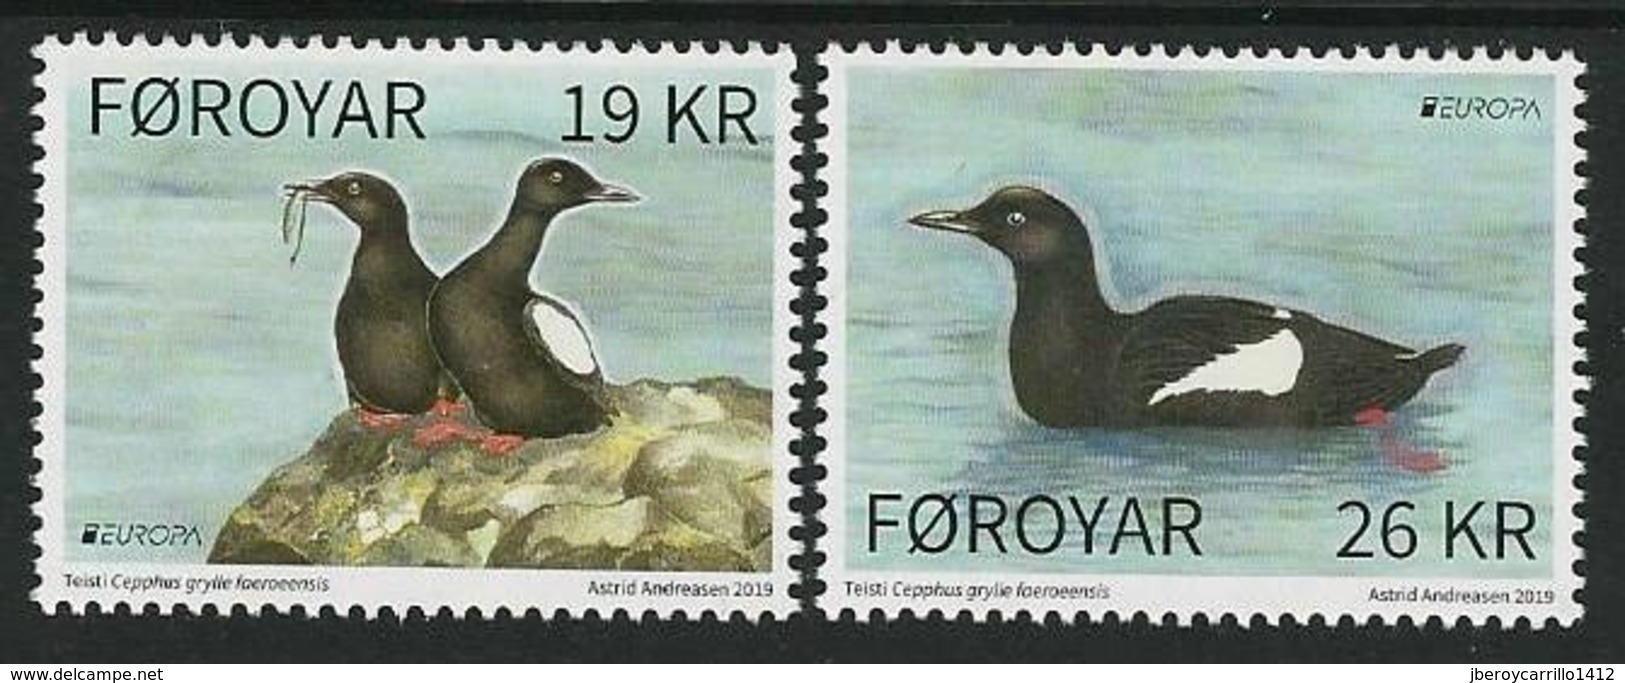 FEROE /FAROE / FÄRÖER / FØROYAR  -EUROPA 2019 -NATIONAL BIRDS.-"AVES -BIRDS -VÖGEL-OISEAUX"-Serie De 2 V. - 2019